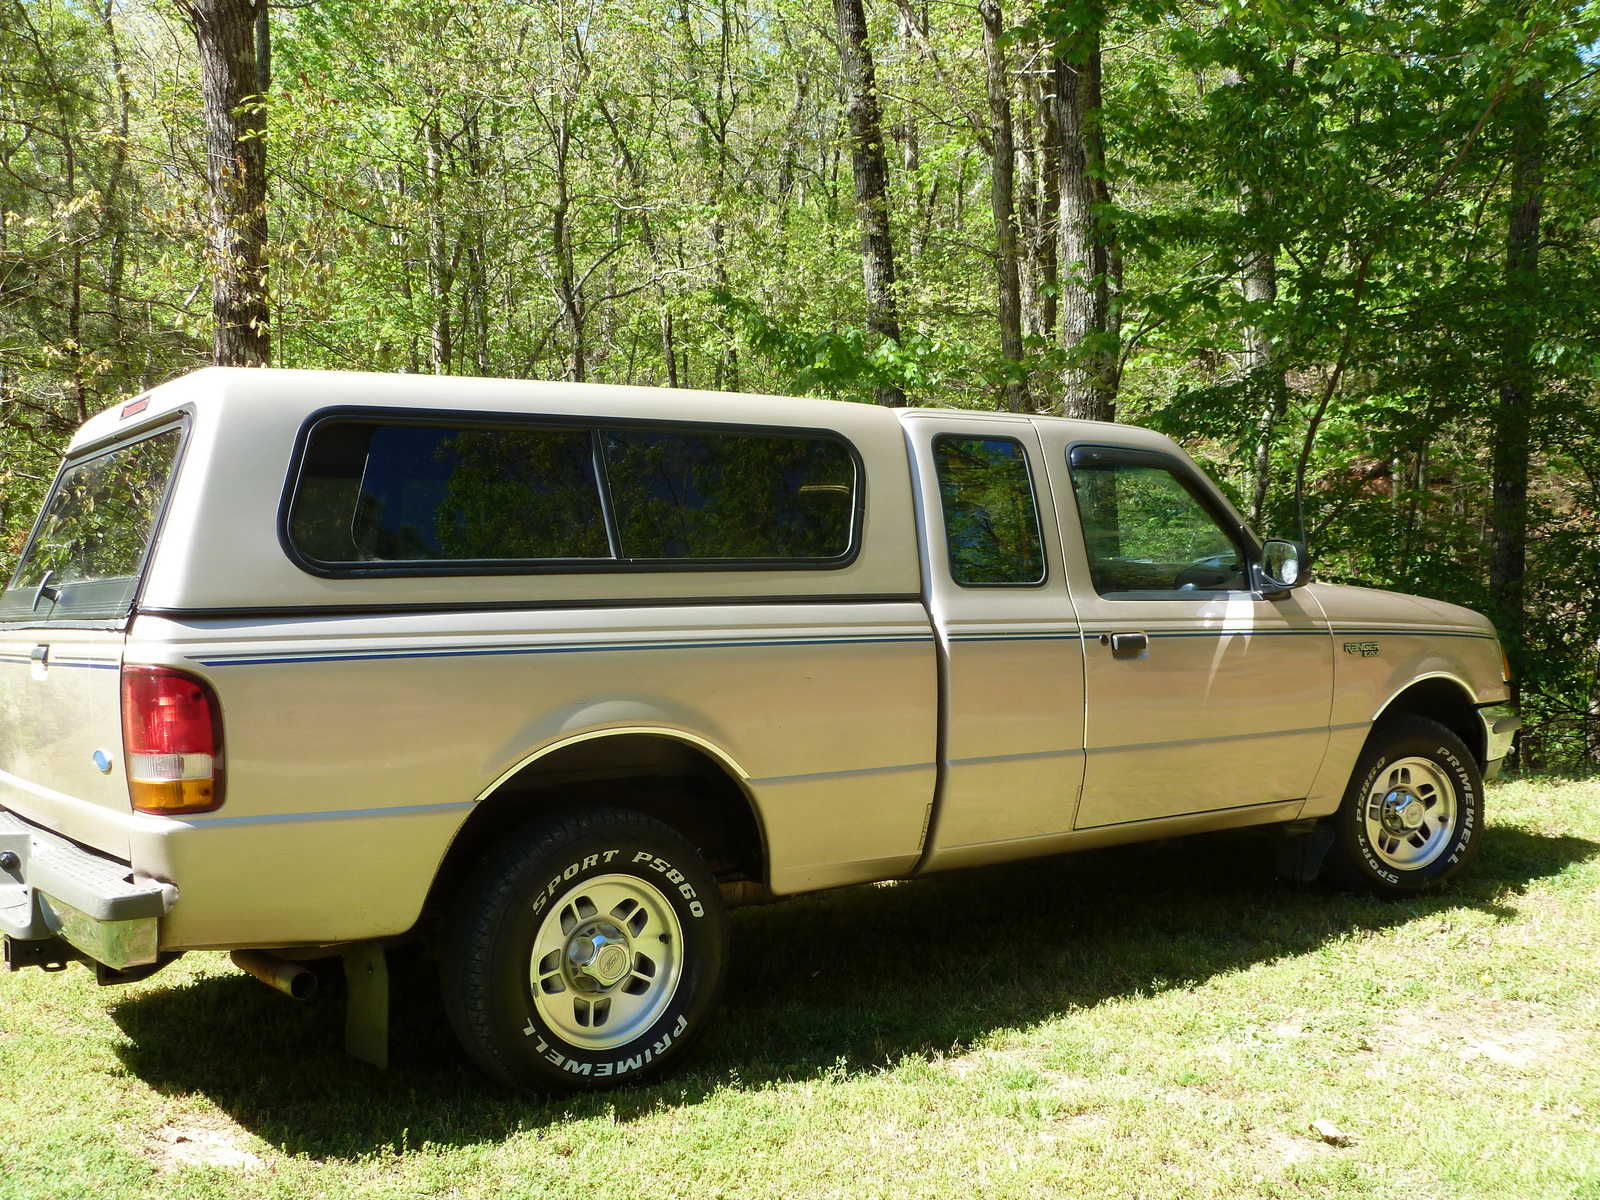 1996 Ford ranger extended cab specs #1